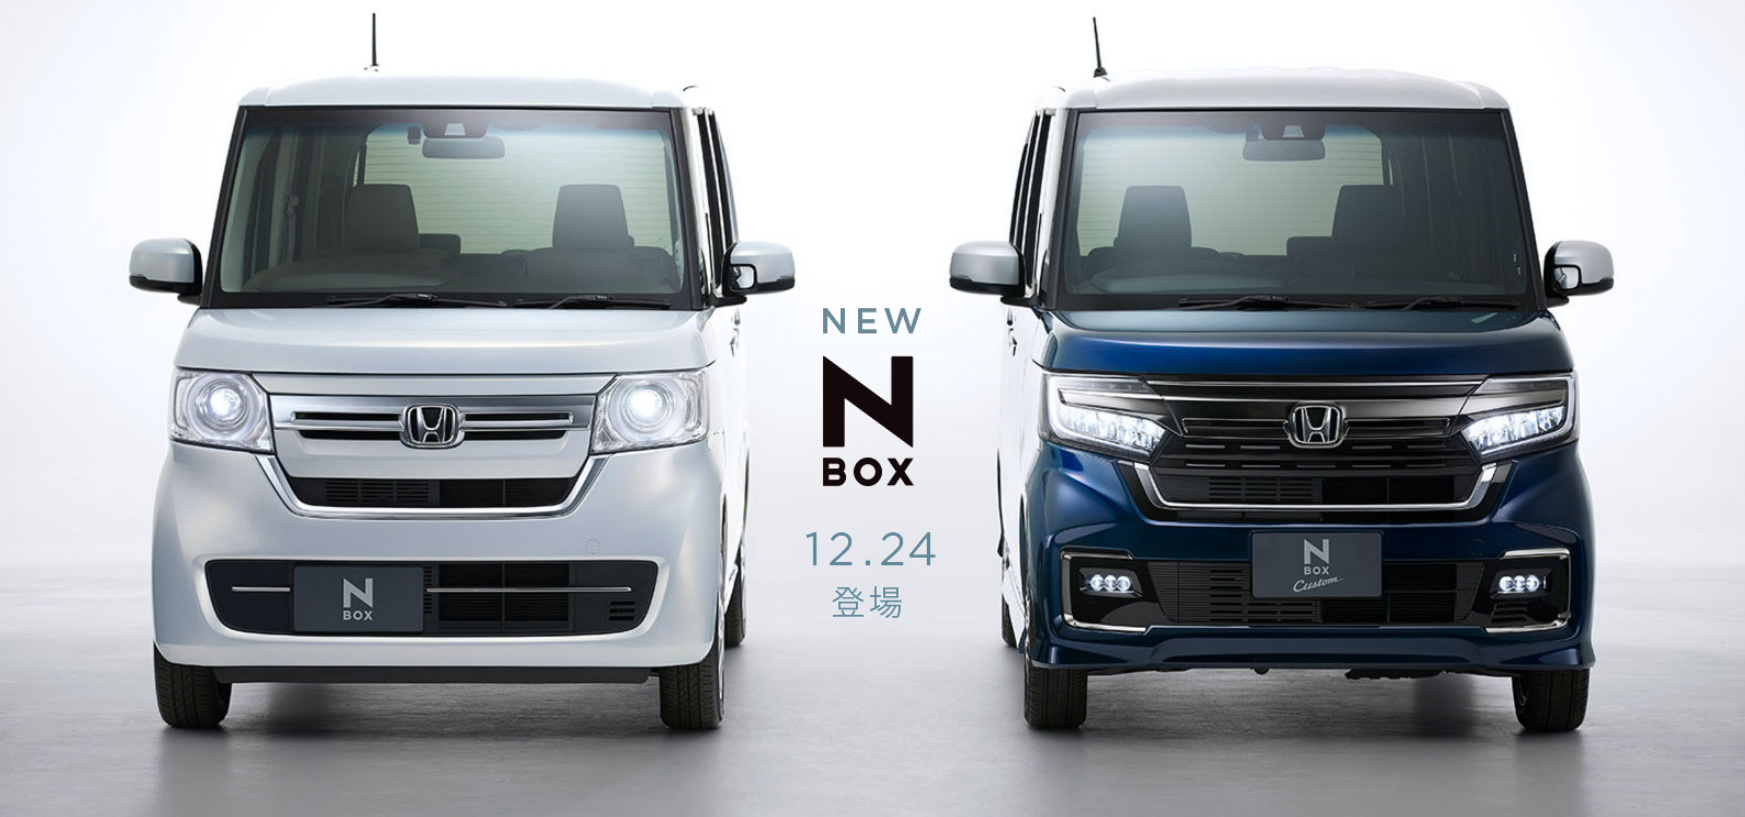 Honda 新型 N Box ノーマルna 及び カスタムターボ 外装 内装 試乗 動画をアップしました Momotaro Blog